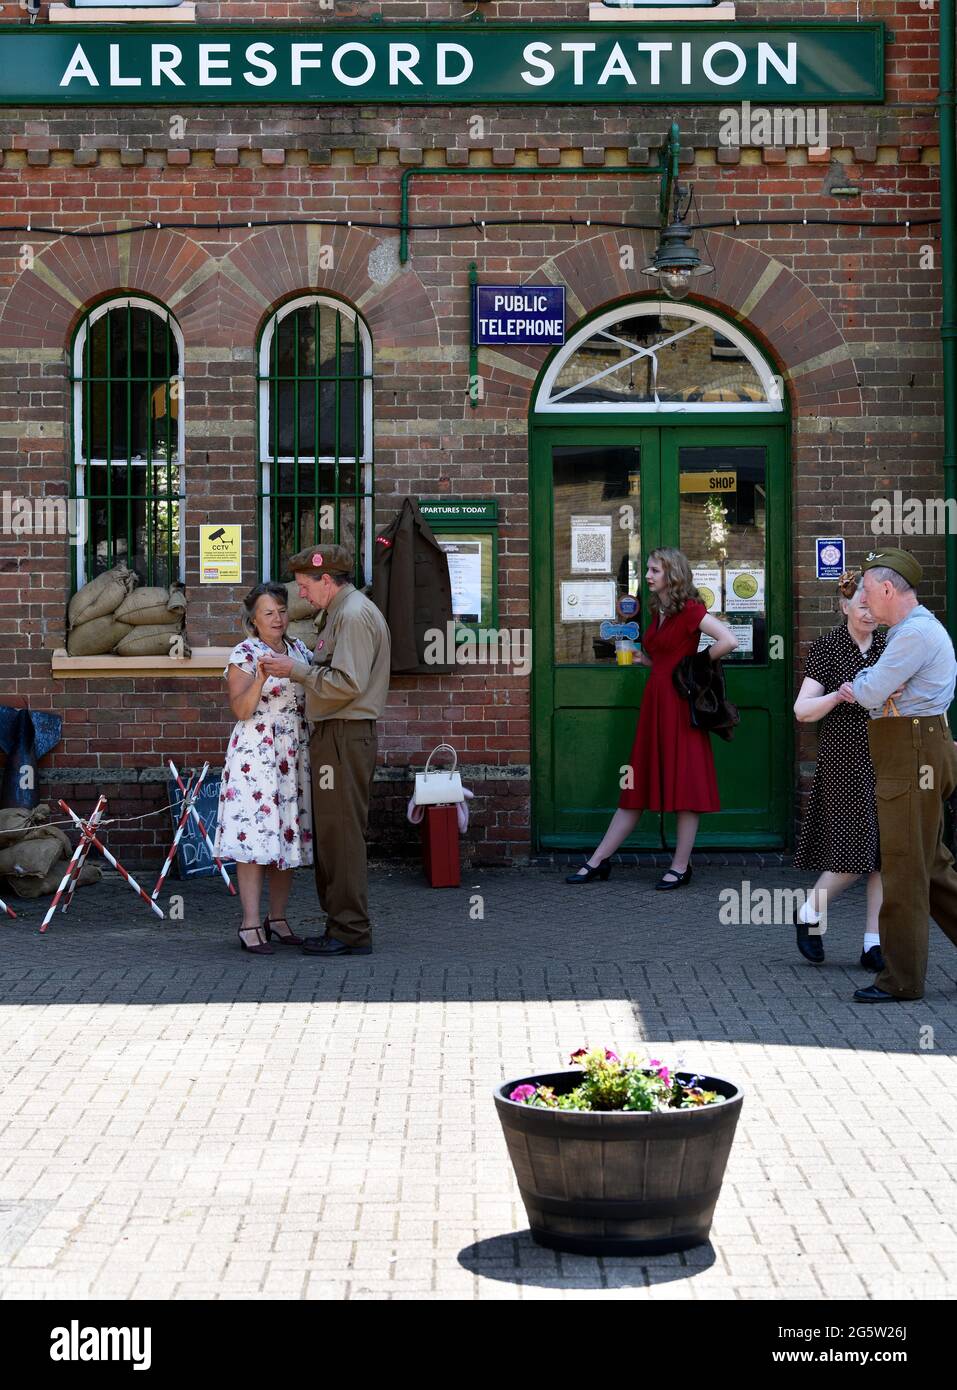 Vista generale dell'esterno della stazione ferroviaria di Alresford con le persone negli anni '40 vestirsi durante l'evento annuale War on the Line, Alresford, Hampshire, Regno Unito. Foto Stock